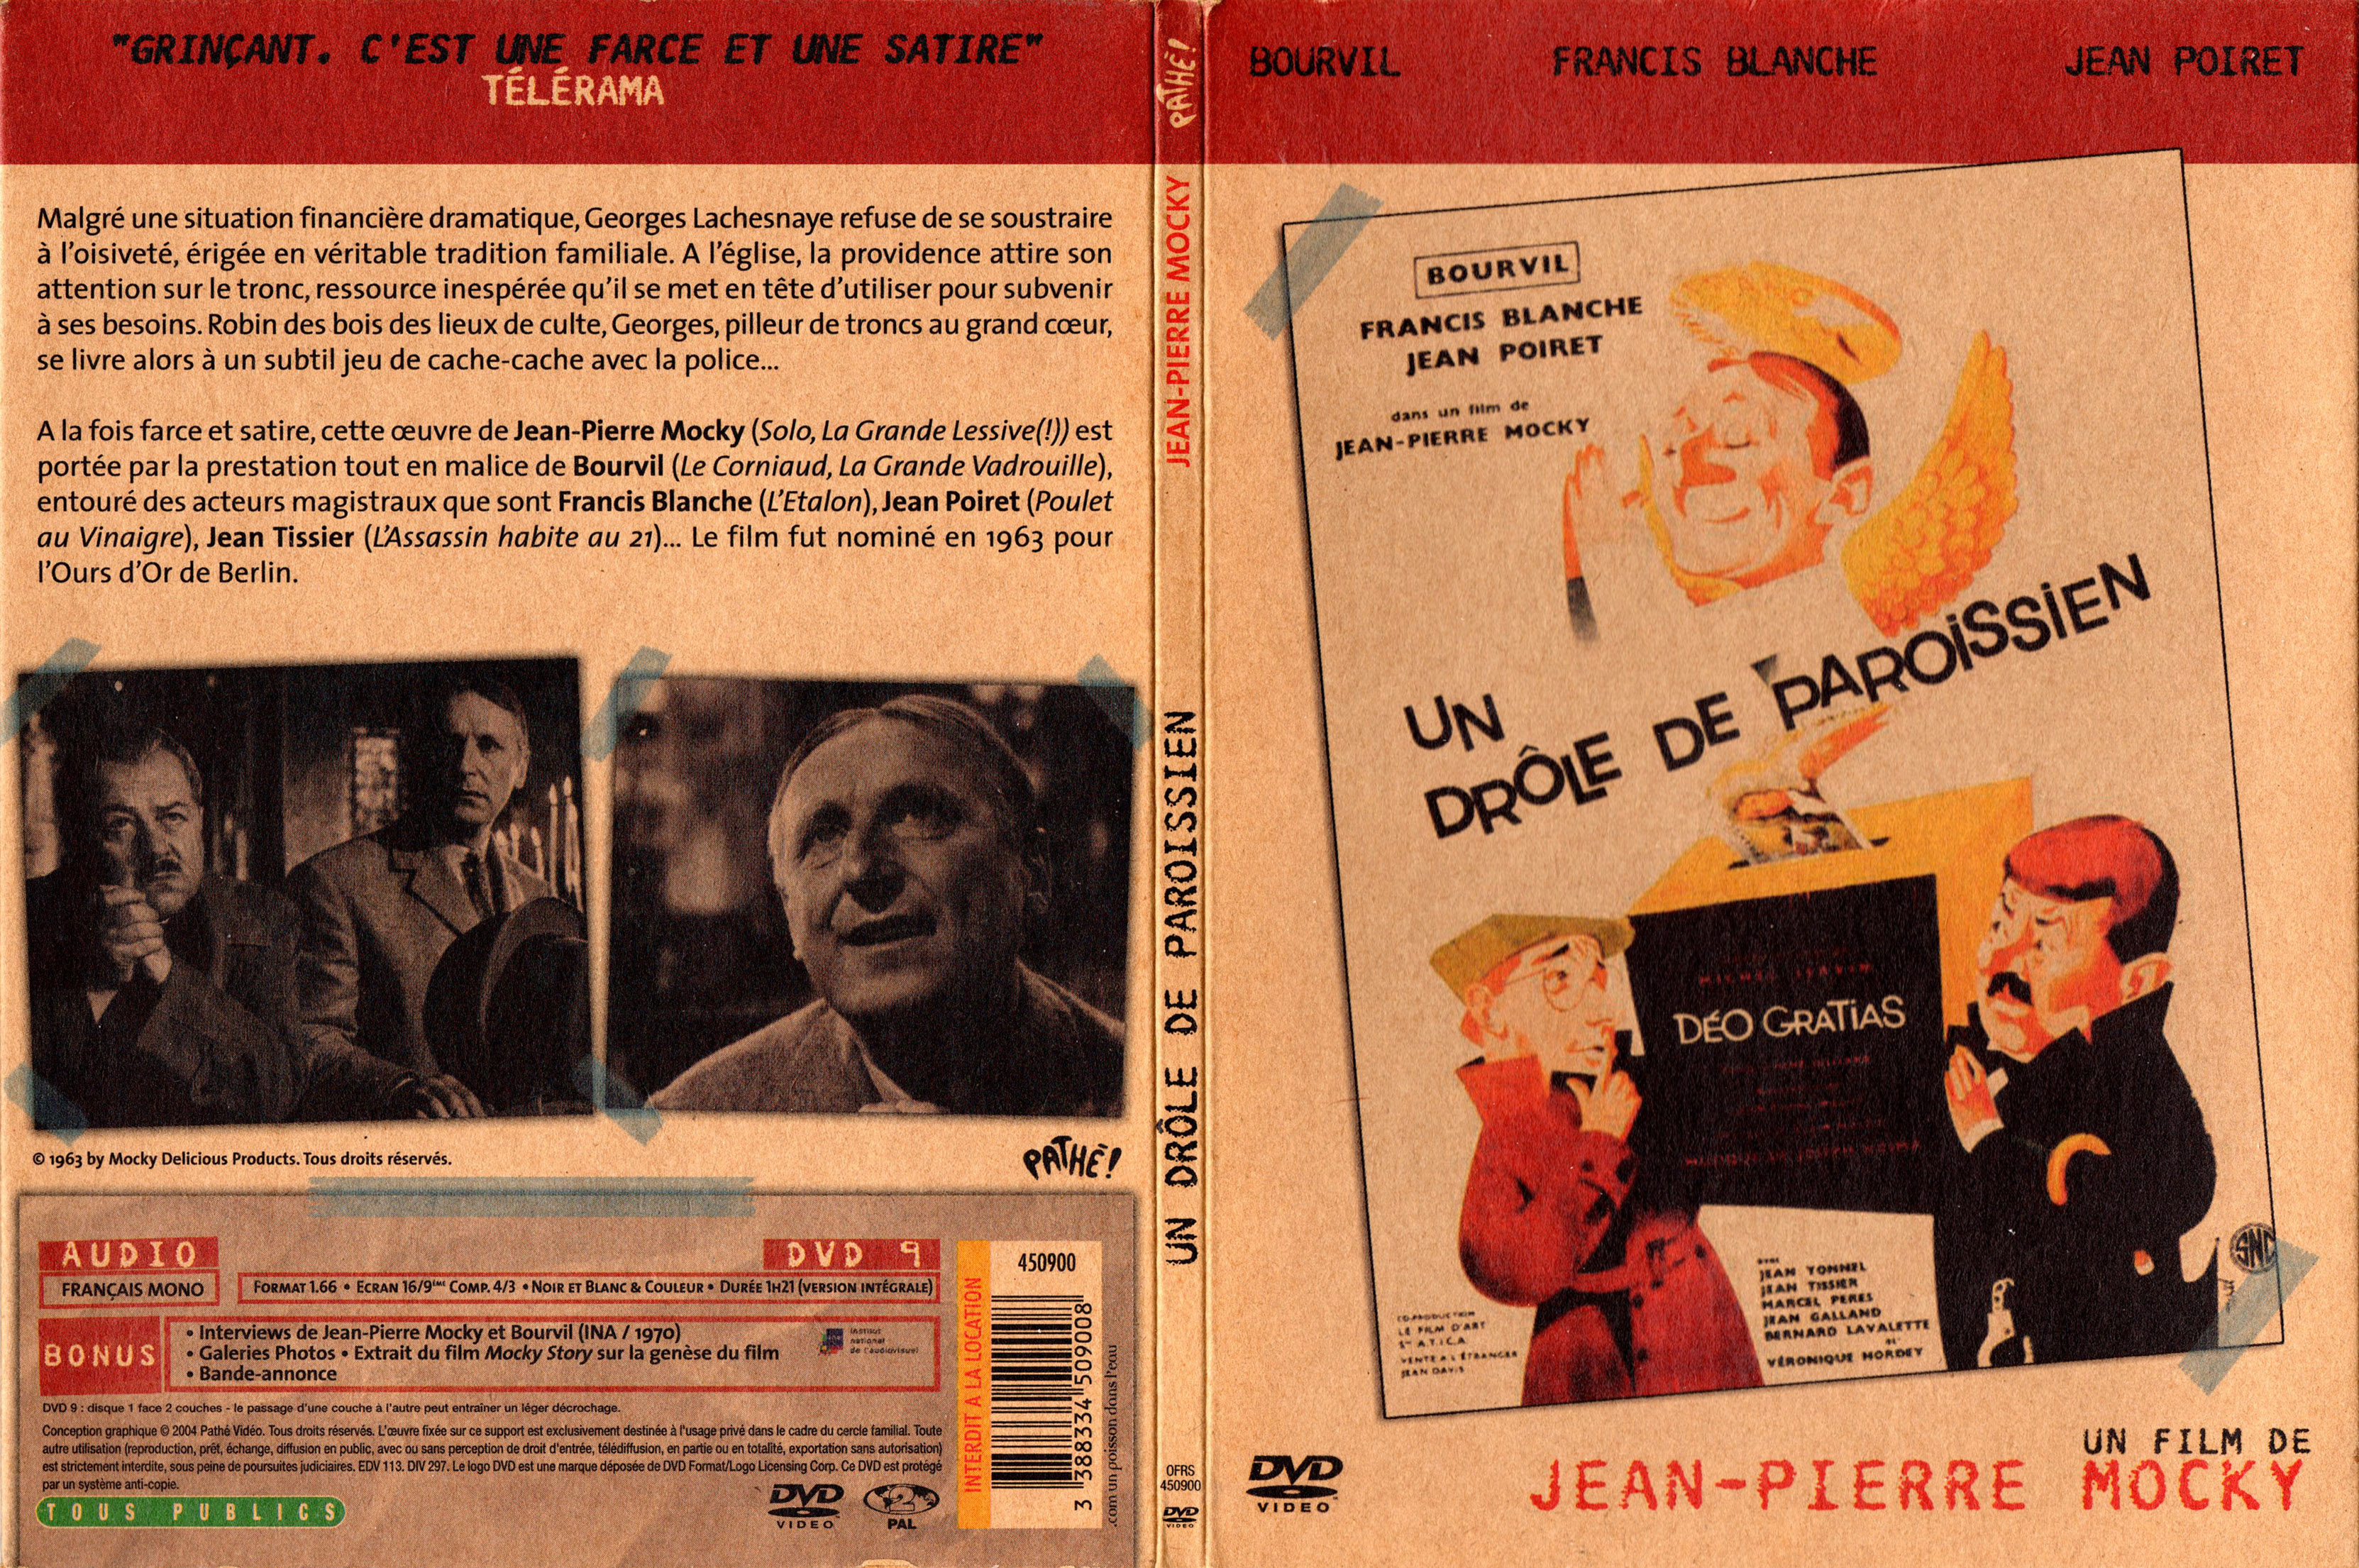 Jaquette DVD Un drole de Paroissien v3